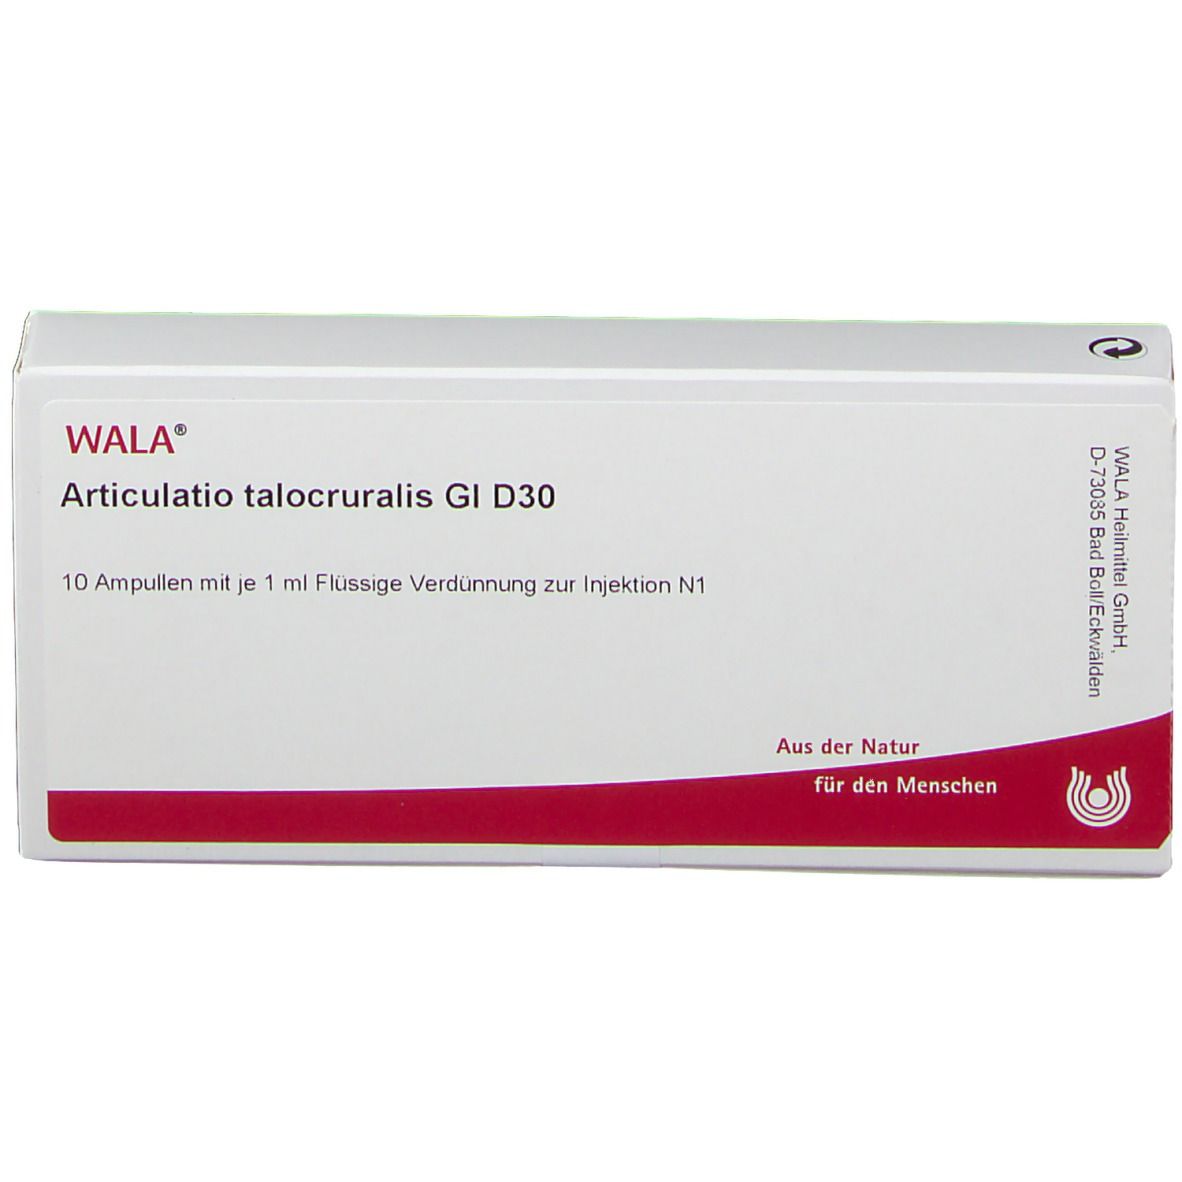 WALA® Articulatio talocruralis Gl D 30